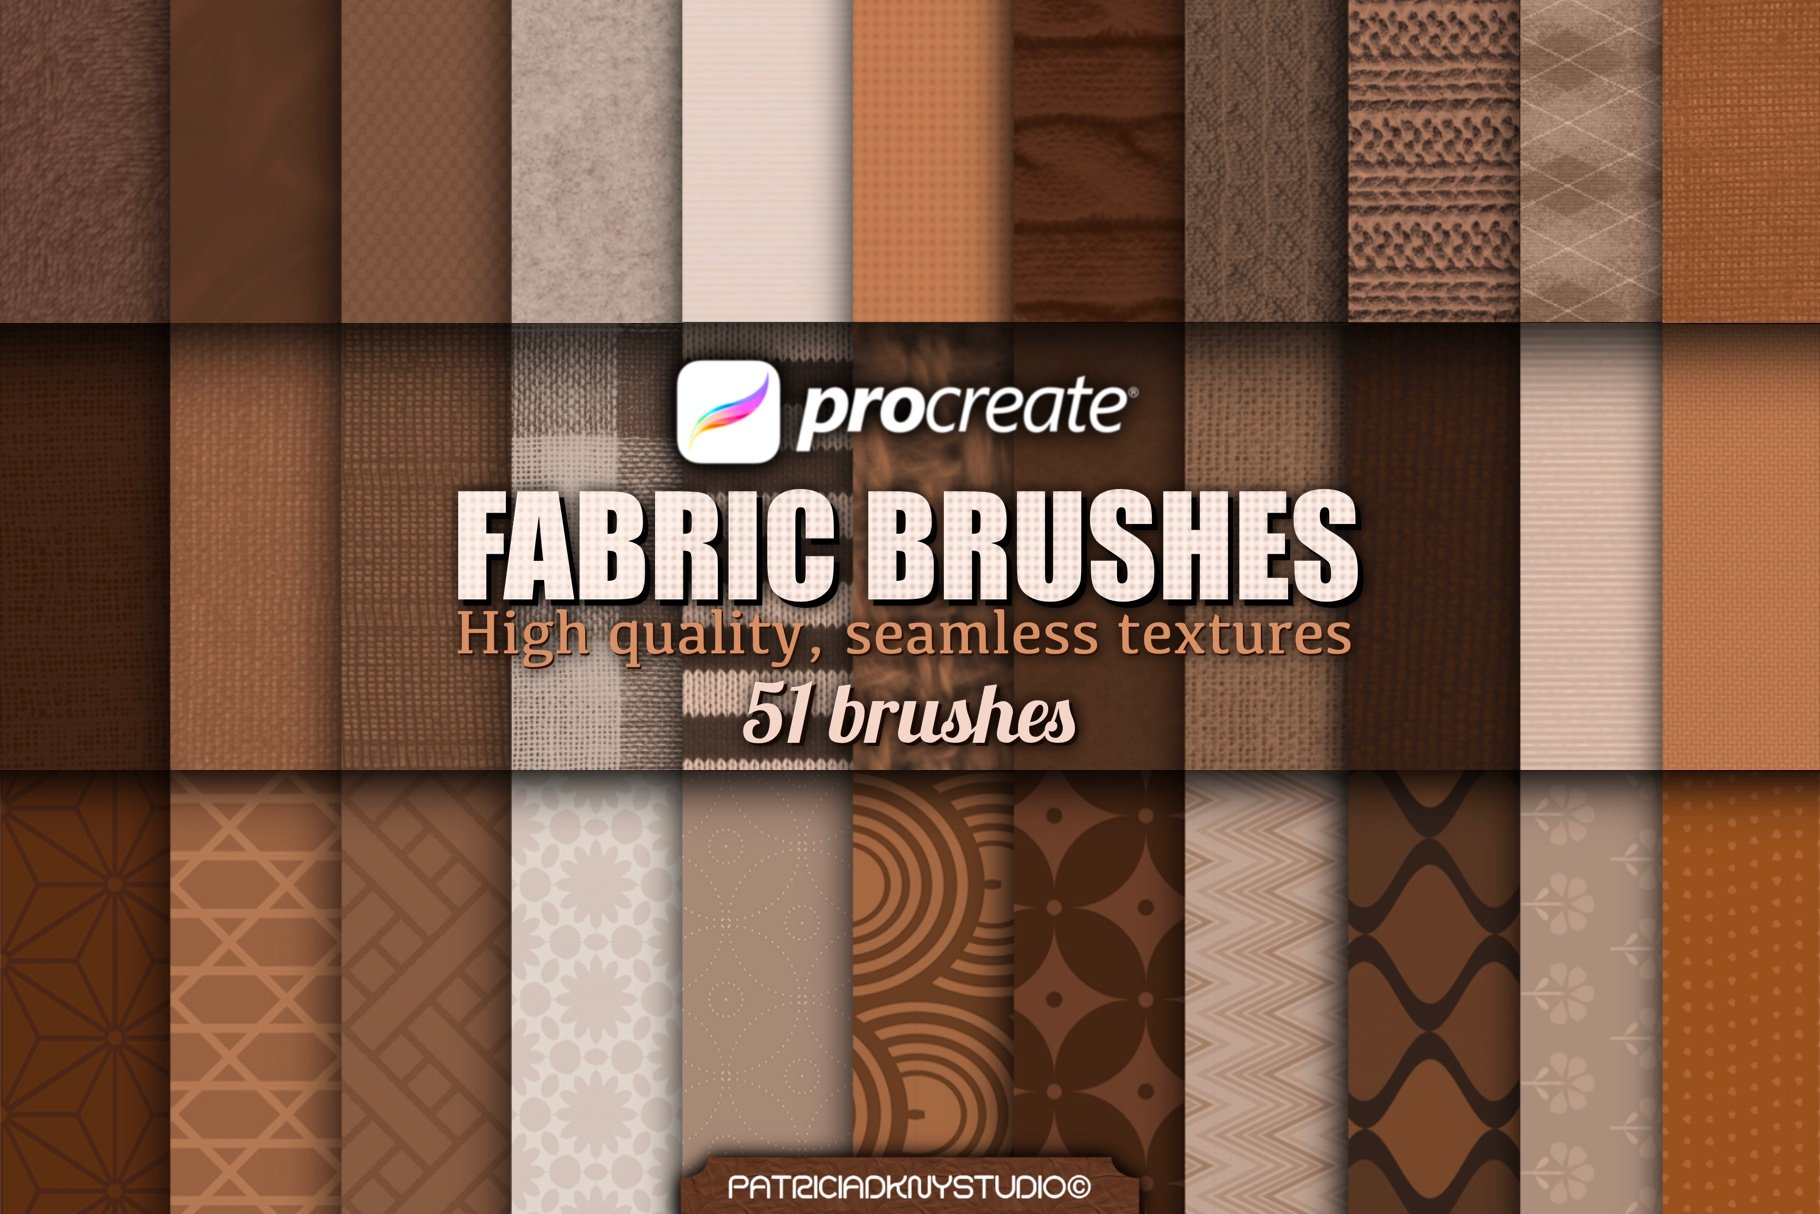 procreate fabric brushes - free